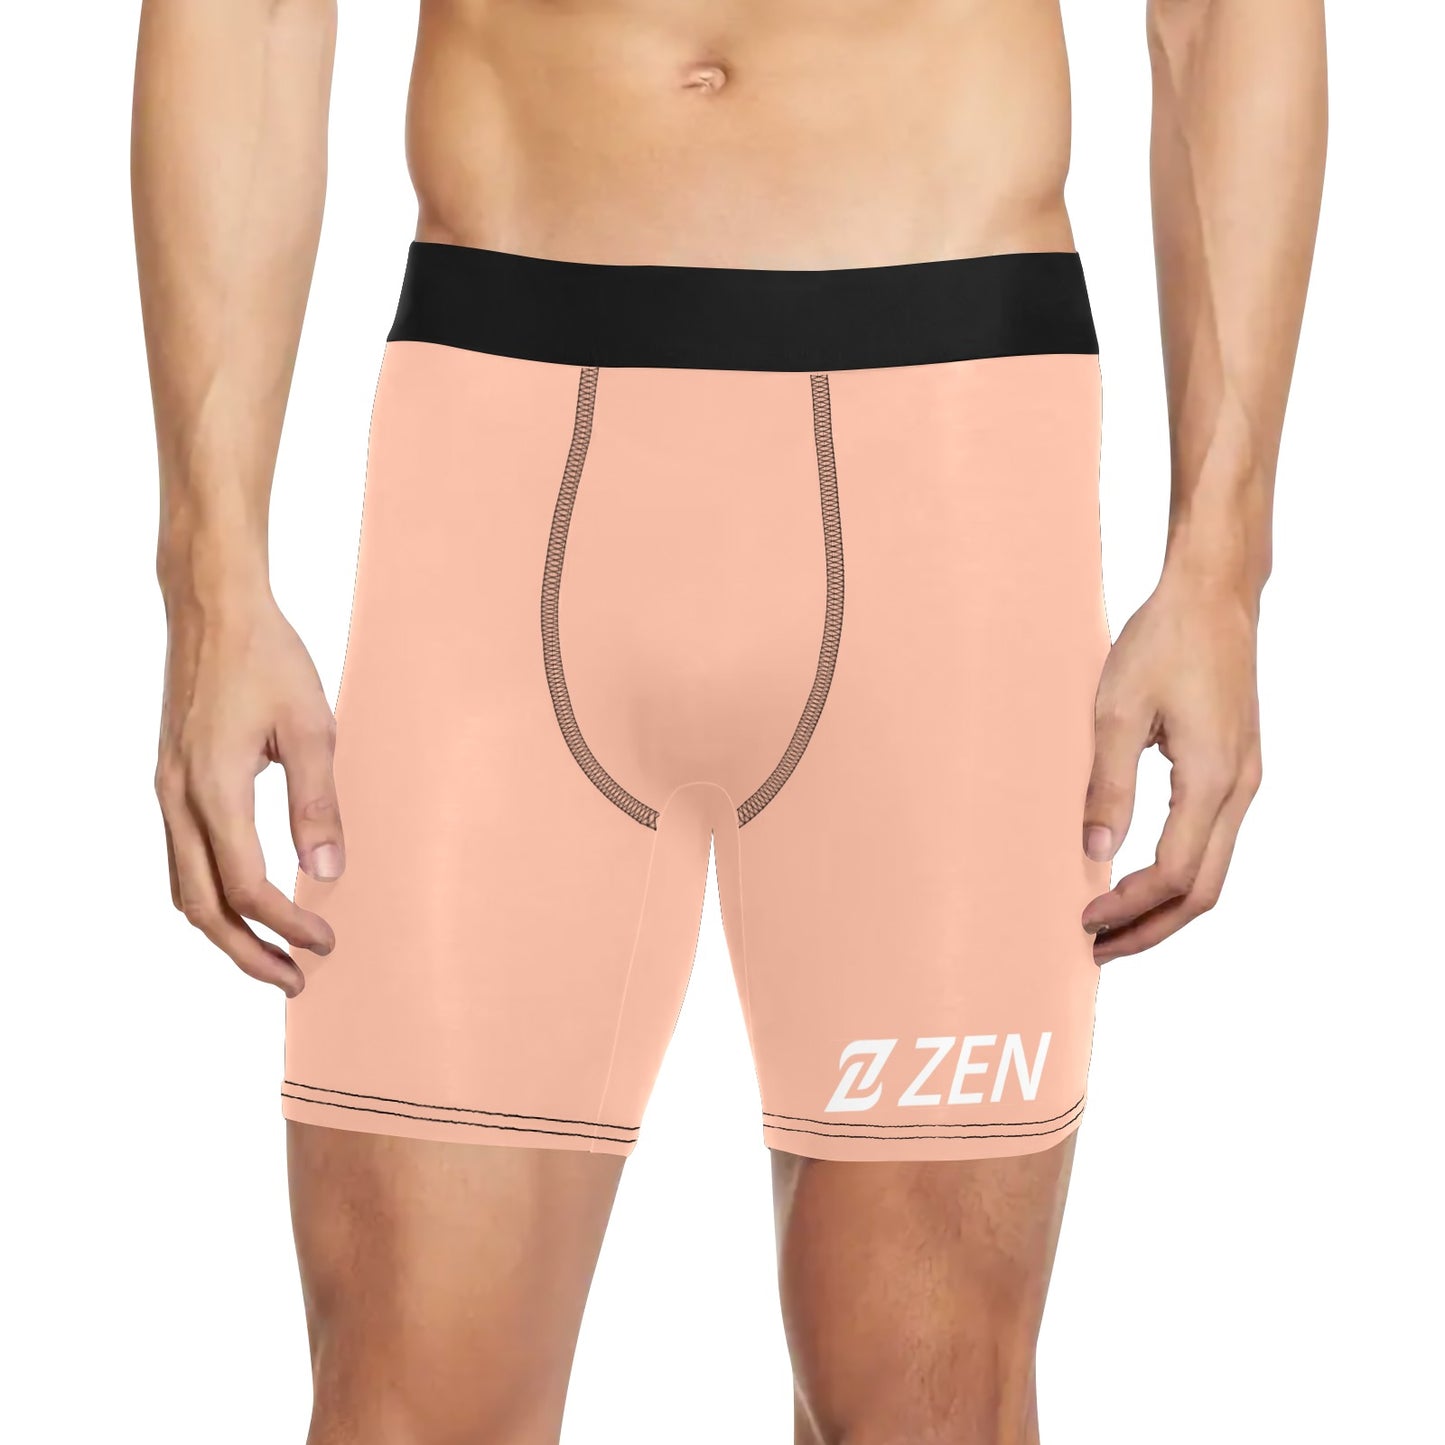 Zen Boxers Long - Nude Pale